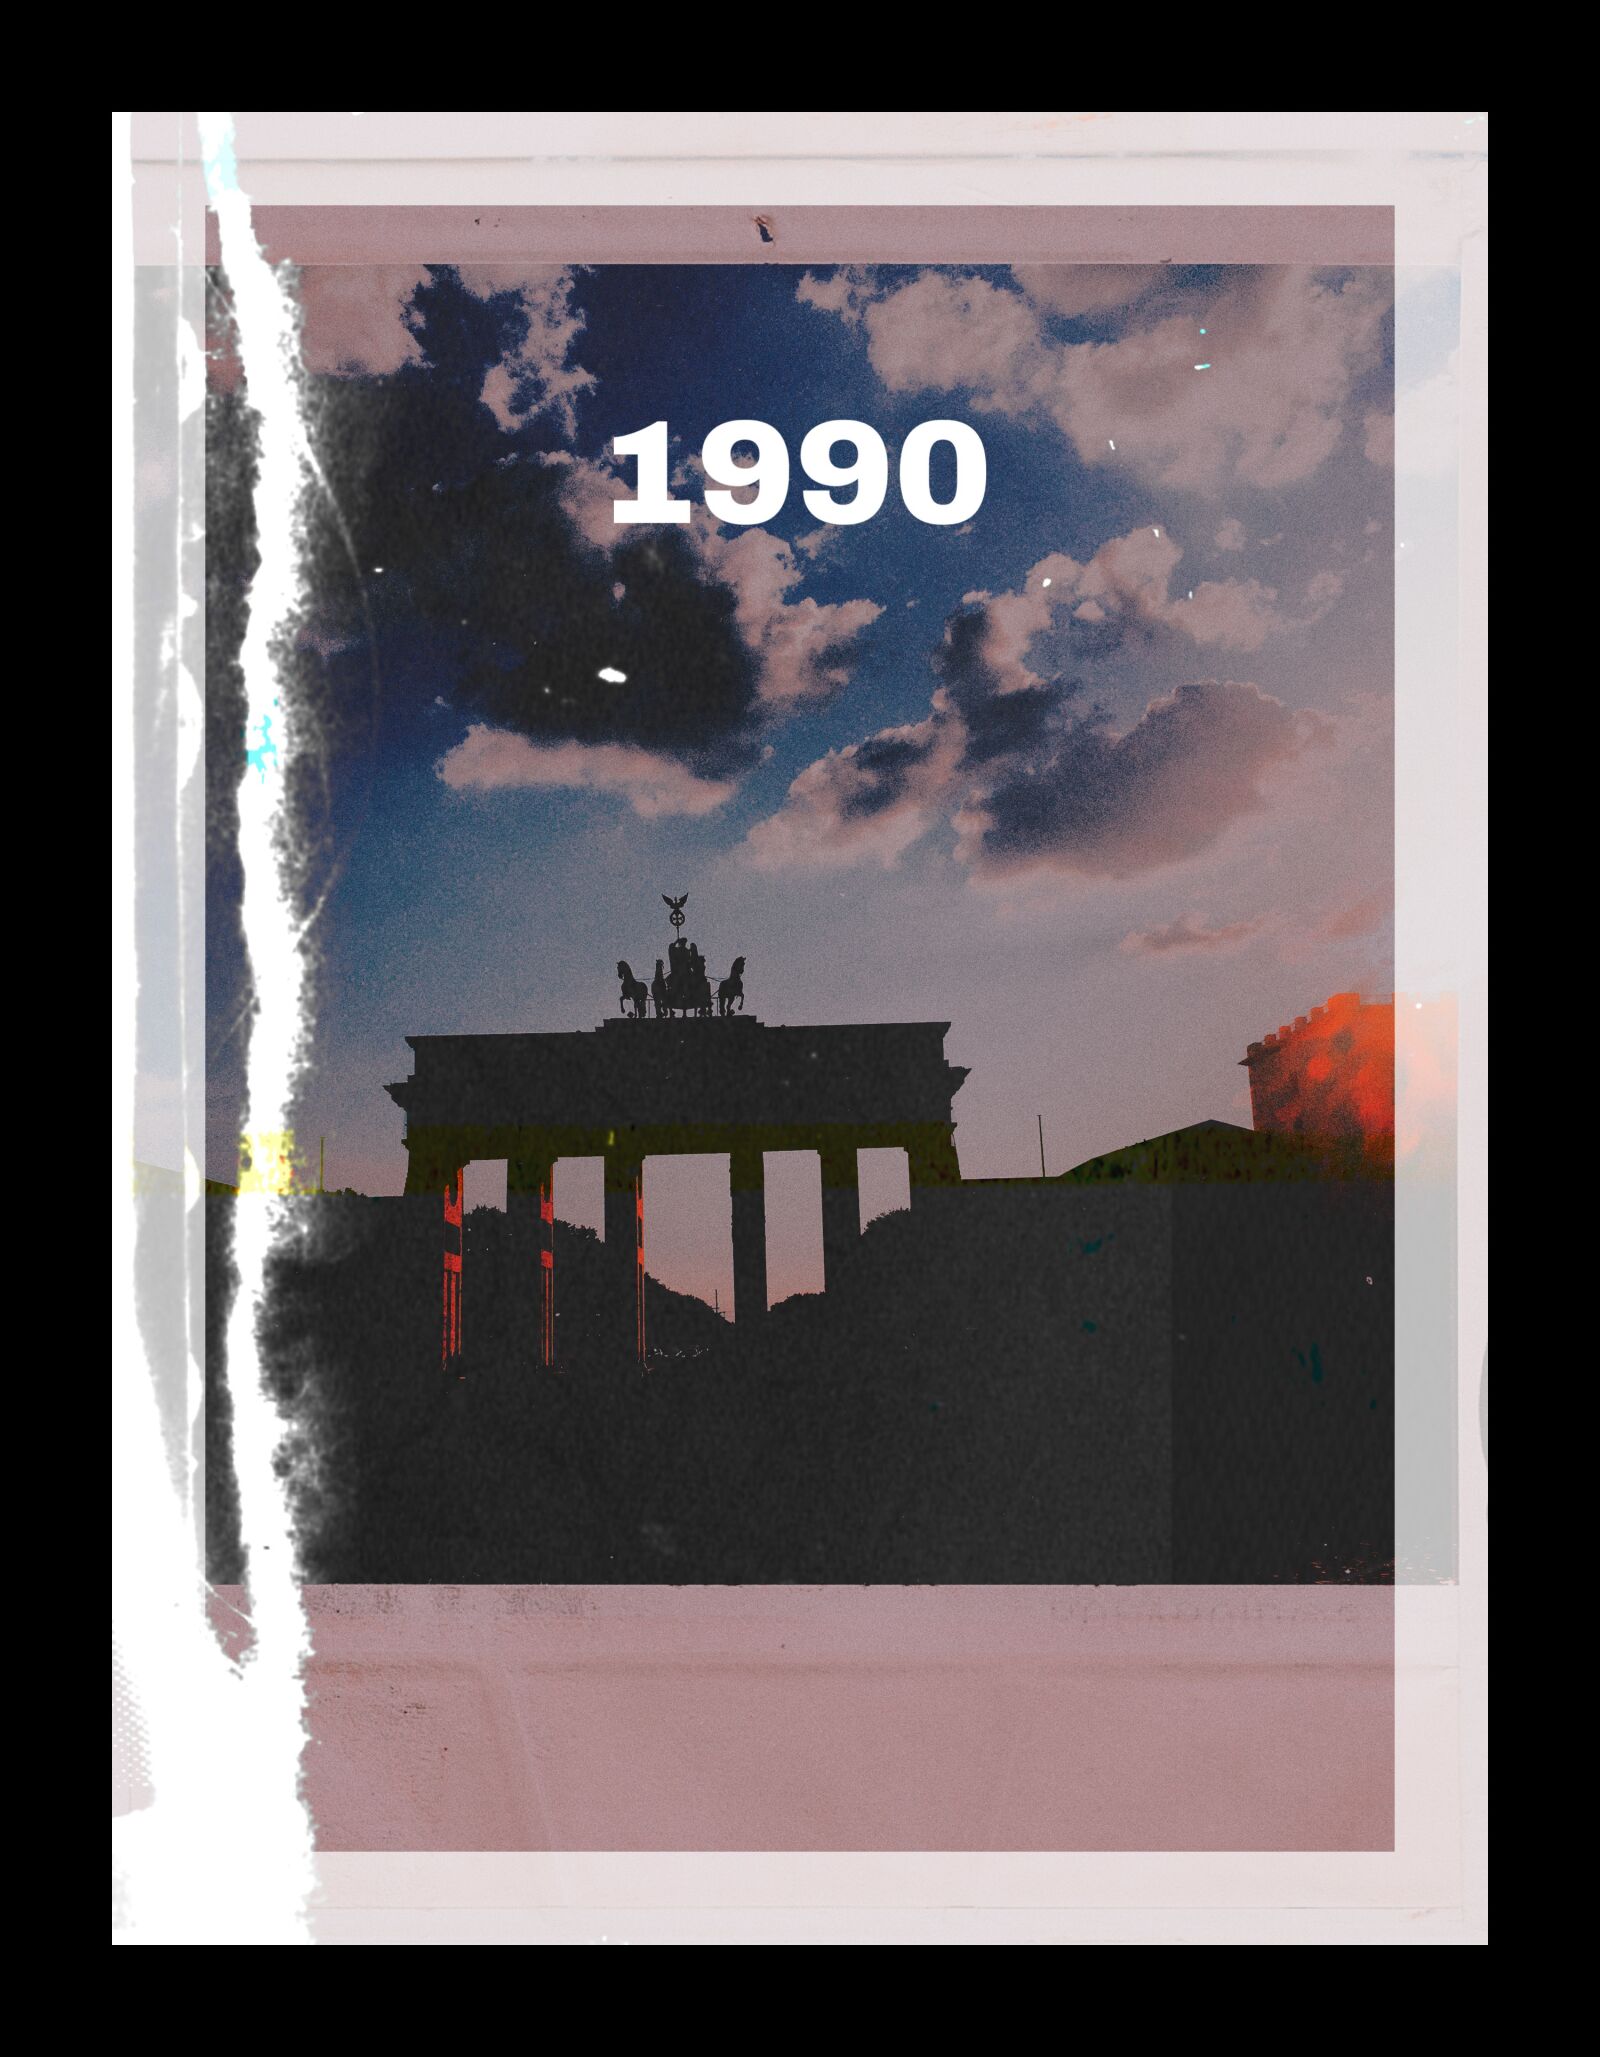 Apple iPhone 6s sample photo. Berlin, brandenburg gate, landmark photography